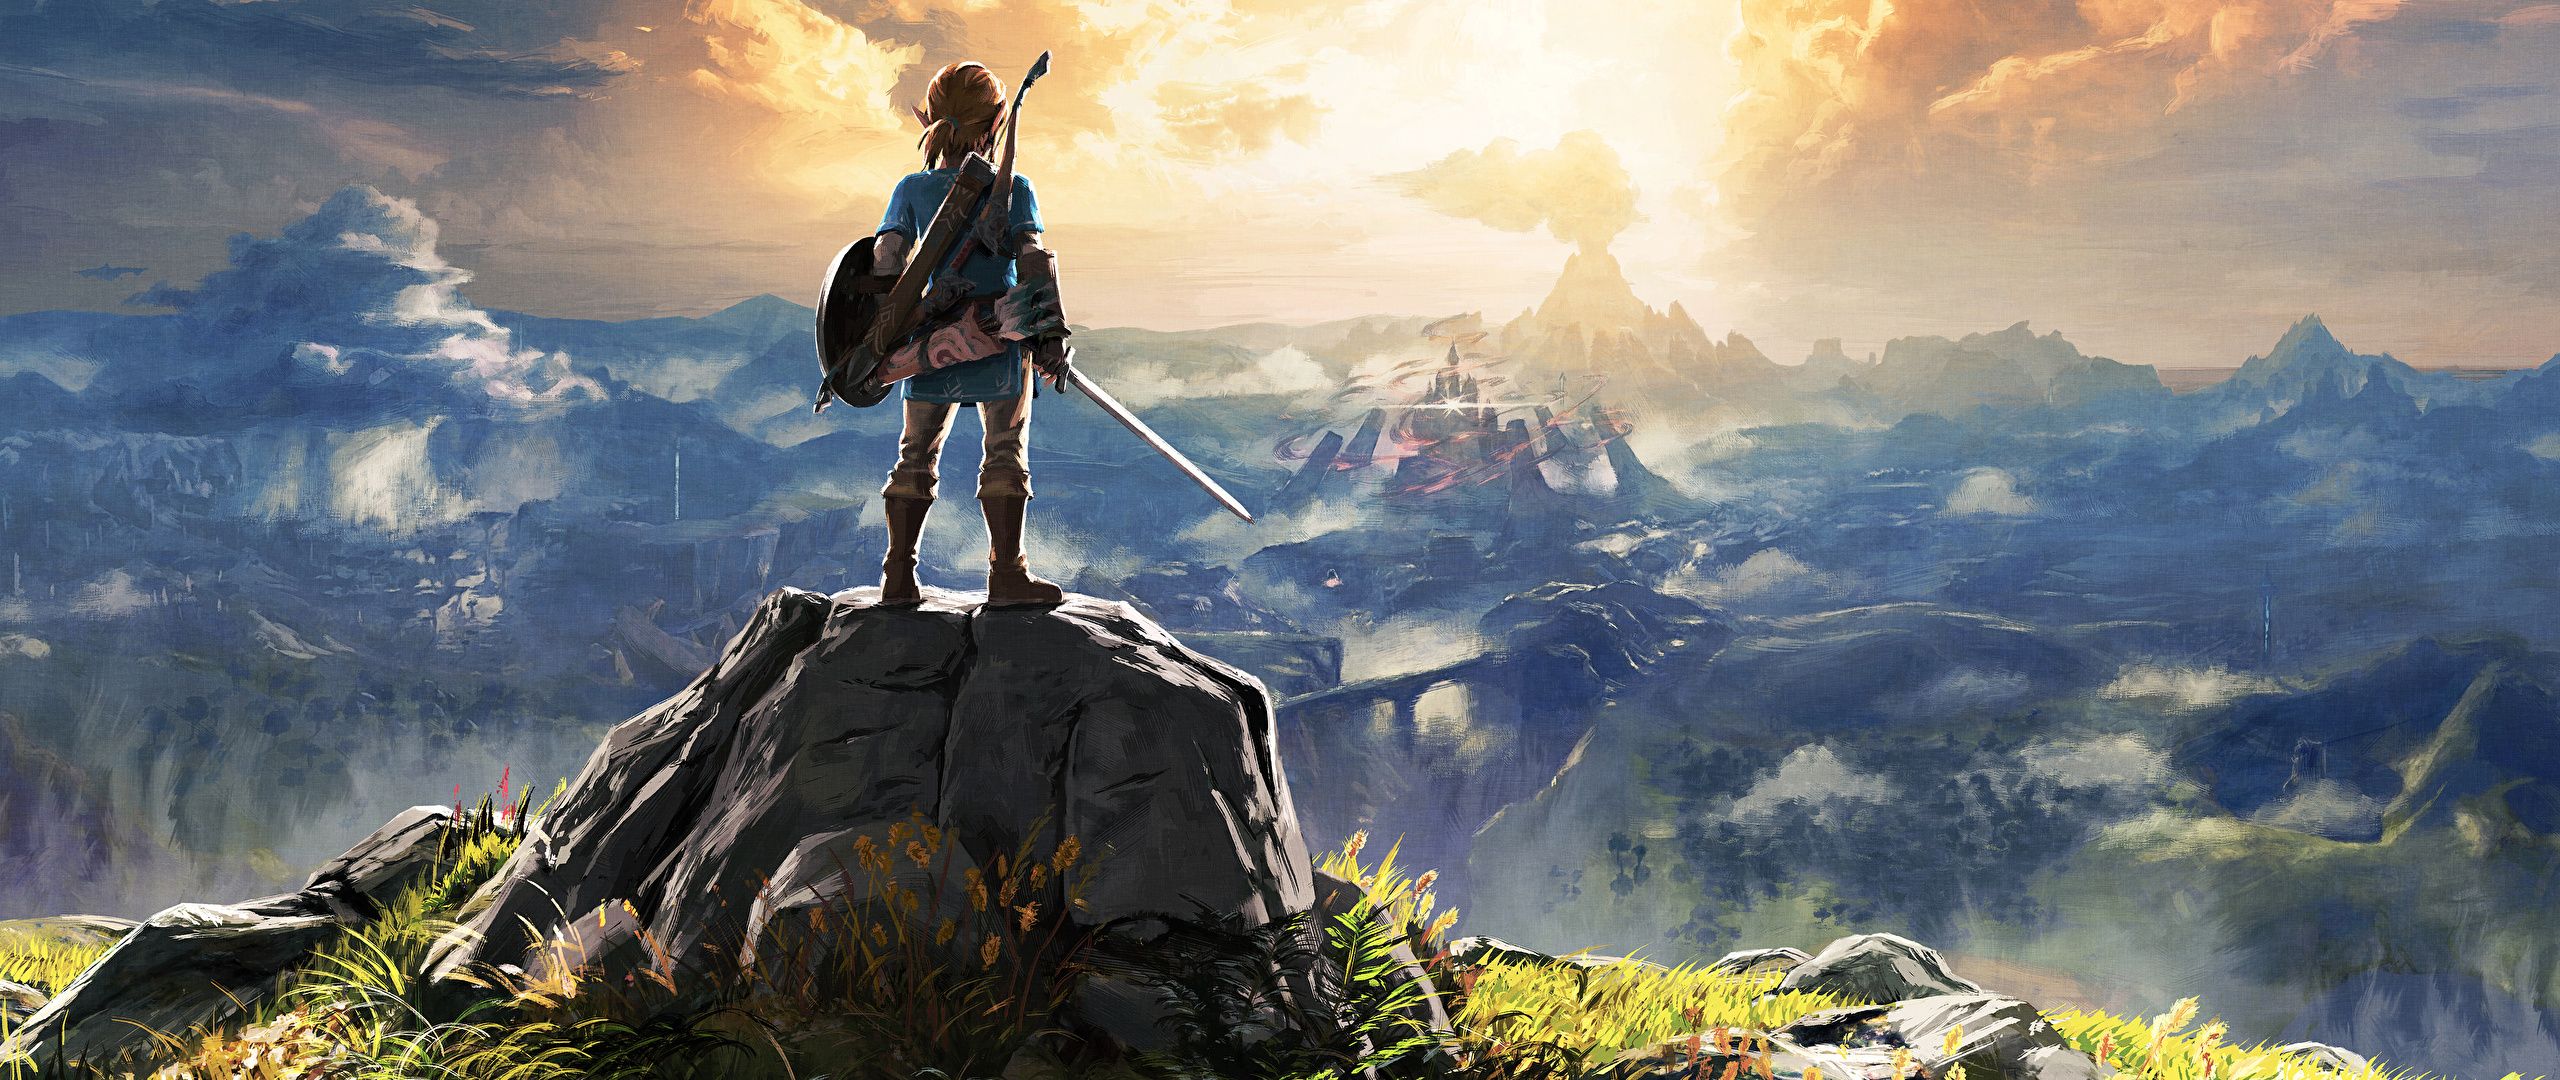 Zelda Breath Of The Wild , HD Wallpaper & Backgrounds